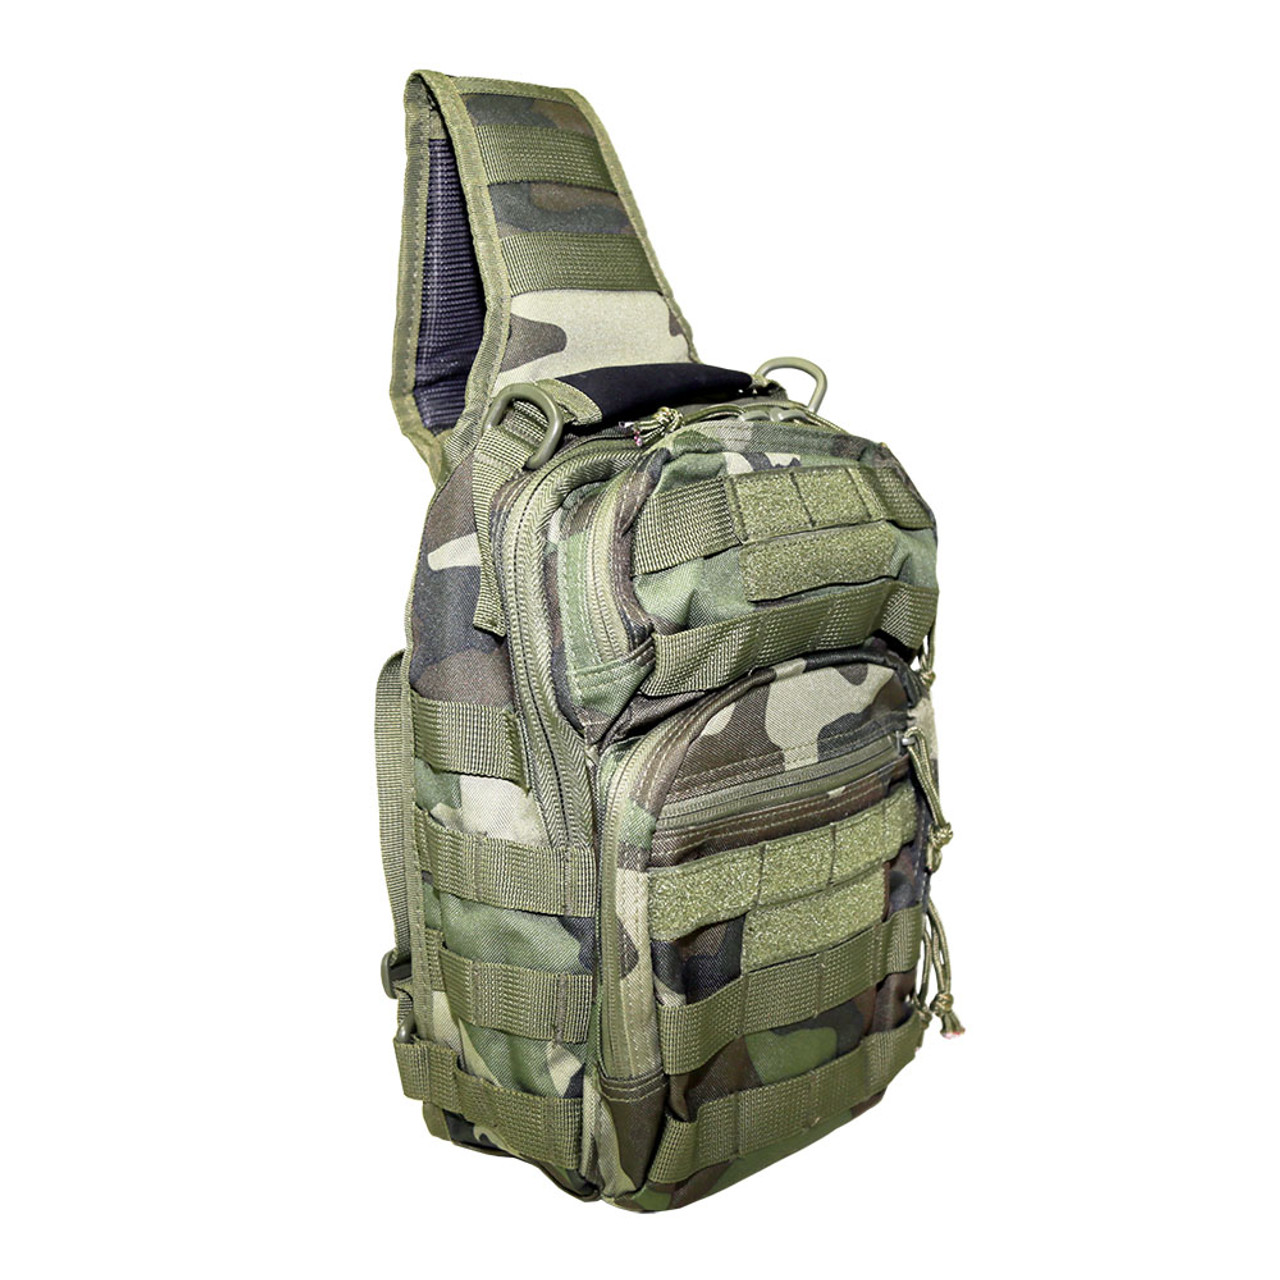 NcStar CVSUB3025WC Tactical Sling Chest Pack Shoulder Bag Outdoor Hiking Travel Backpack